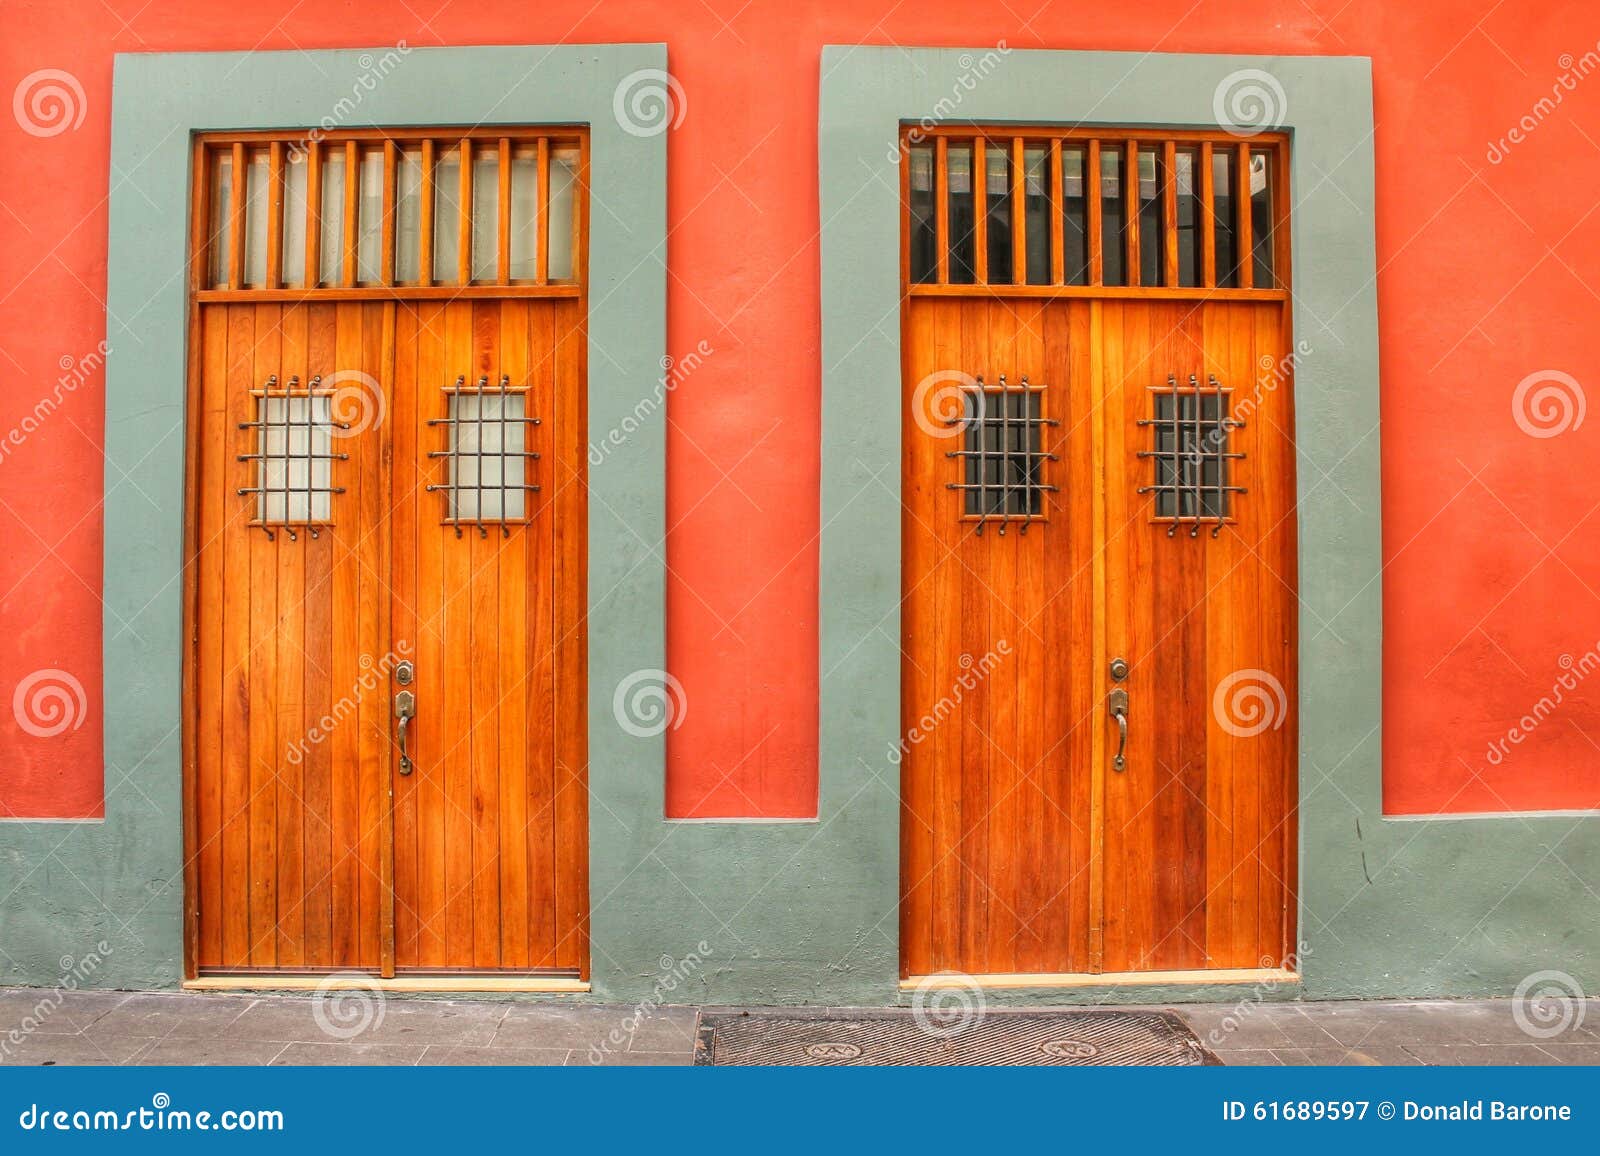 the doors of san juan puerto rico